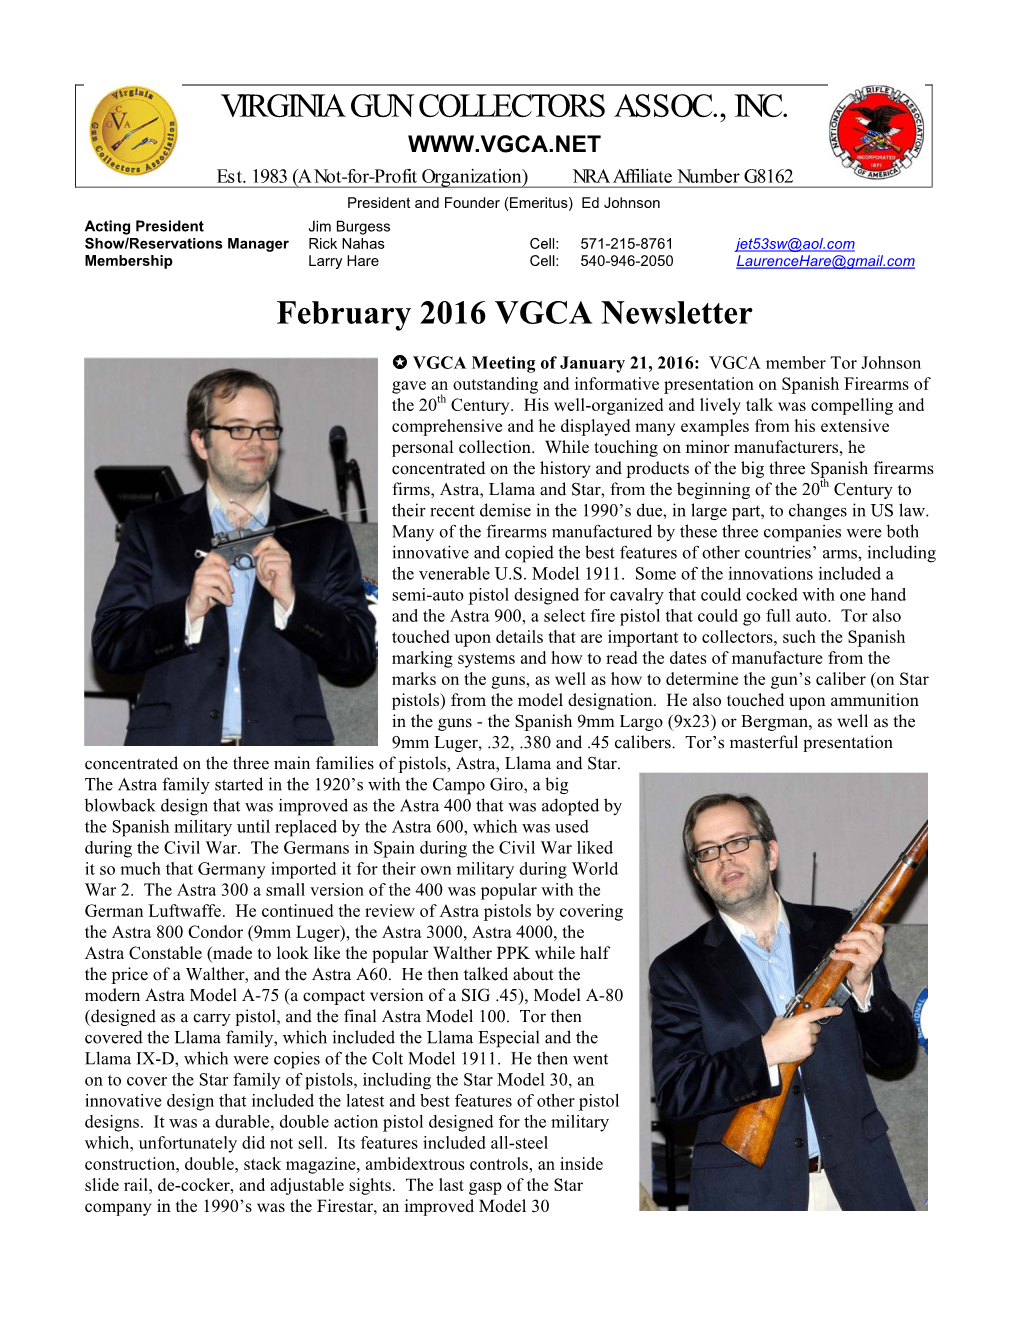 VIRGINIA GUN COLLECTORS ASSOC., INC. February 2016 VGCA